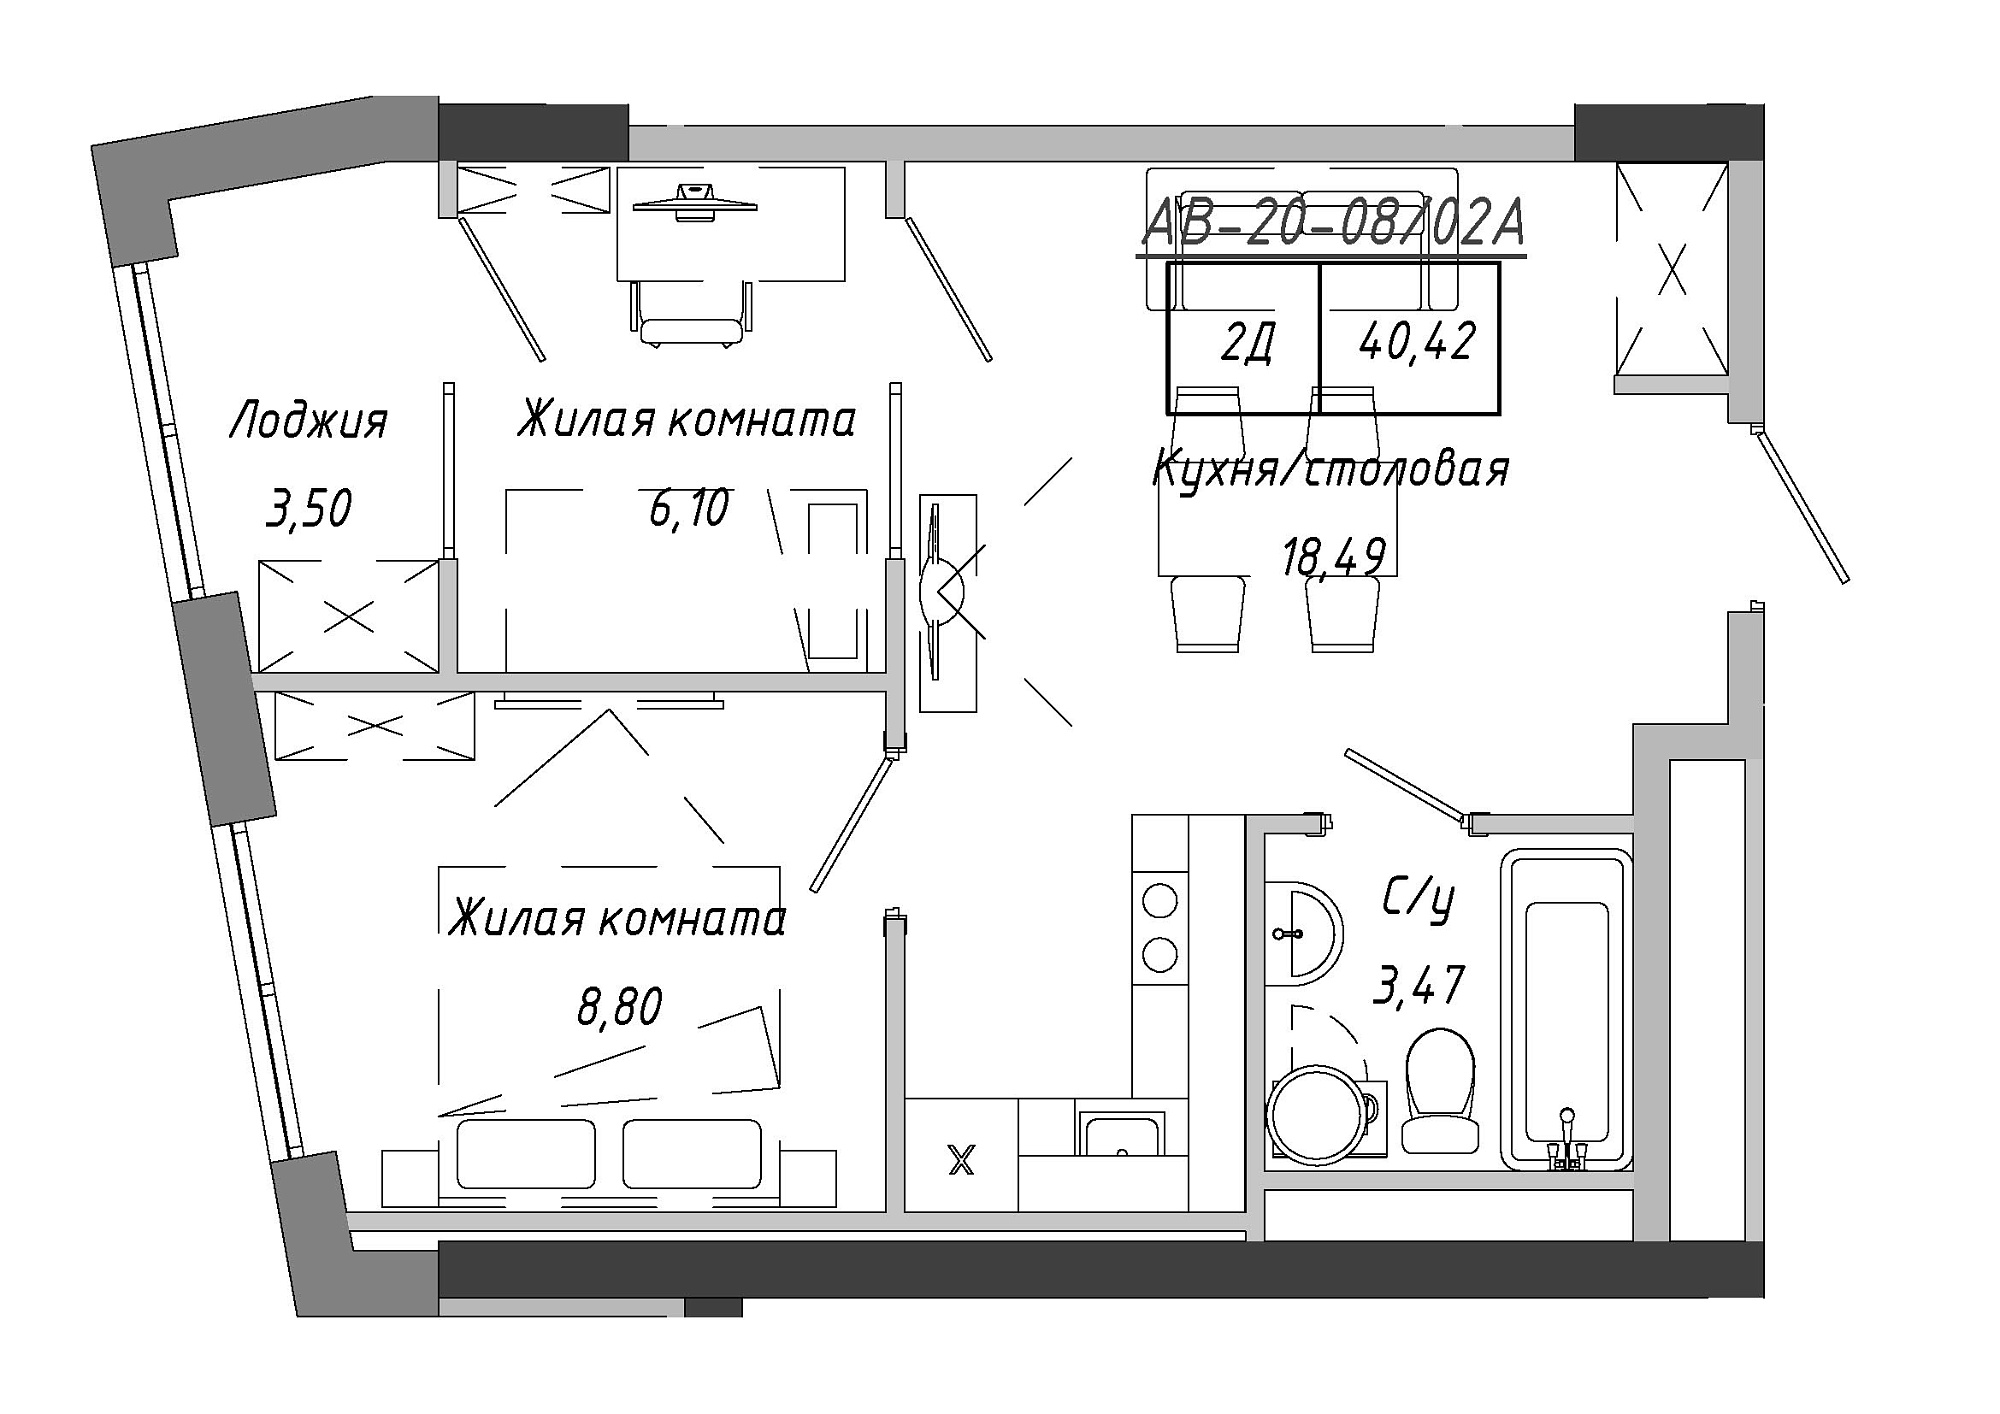 Планировка 2-к квартира площей 41.9м2, AB-20-08/0002а.